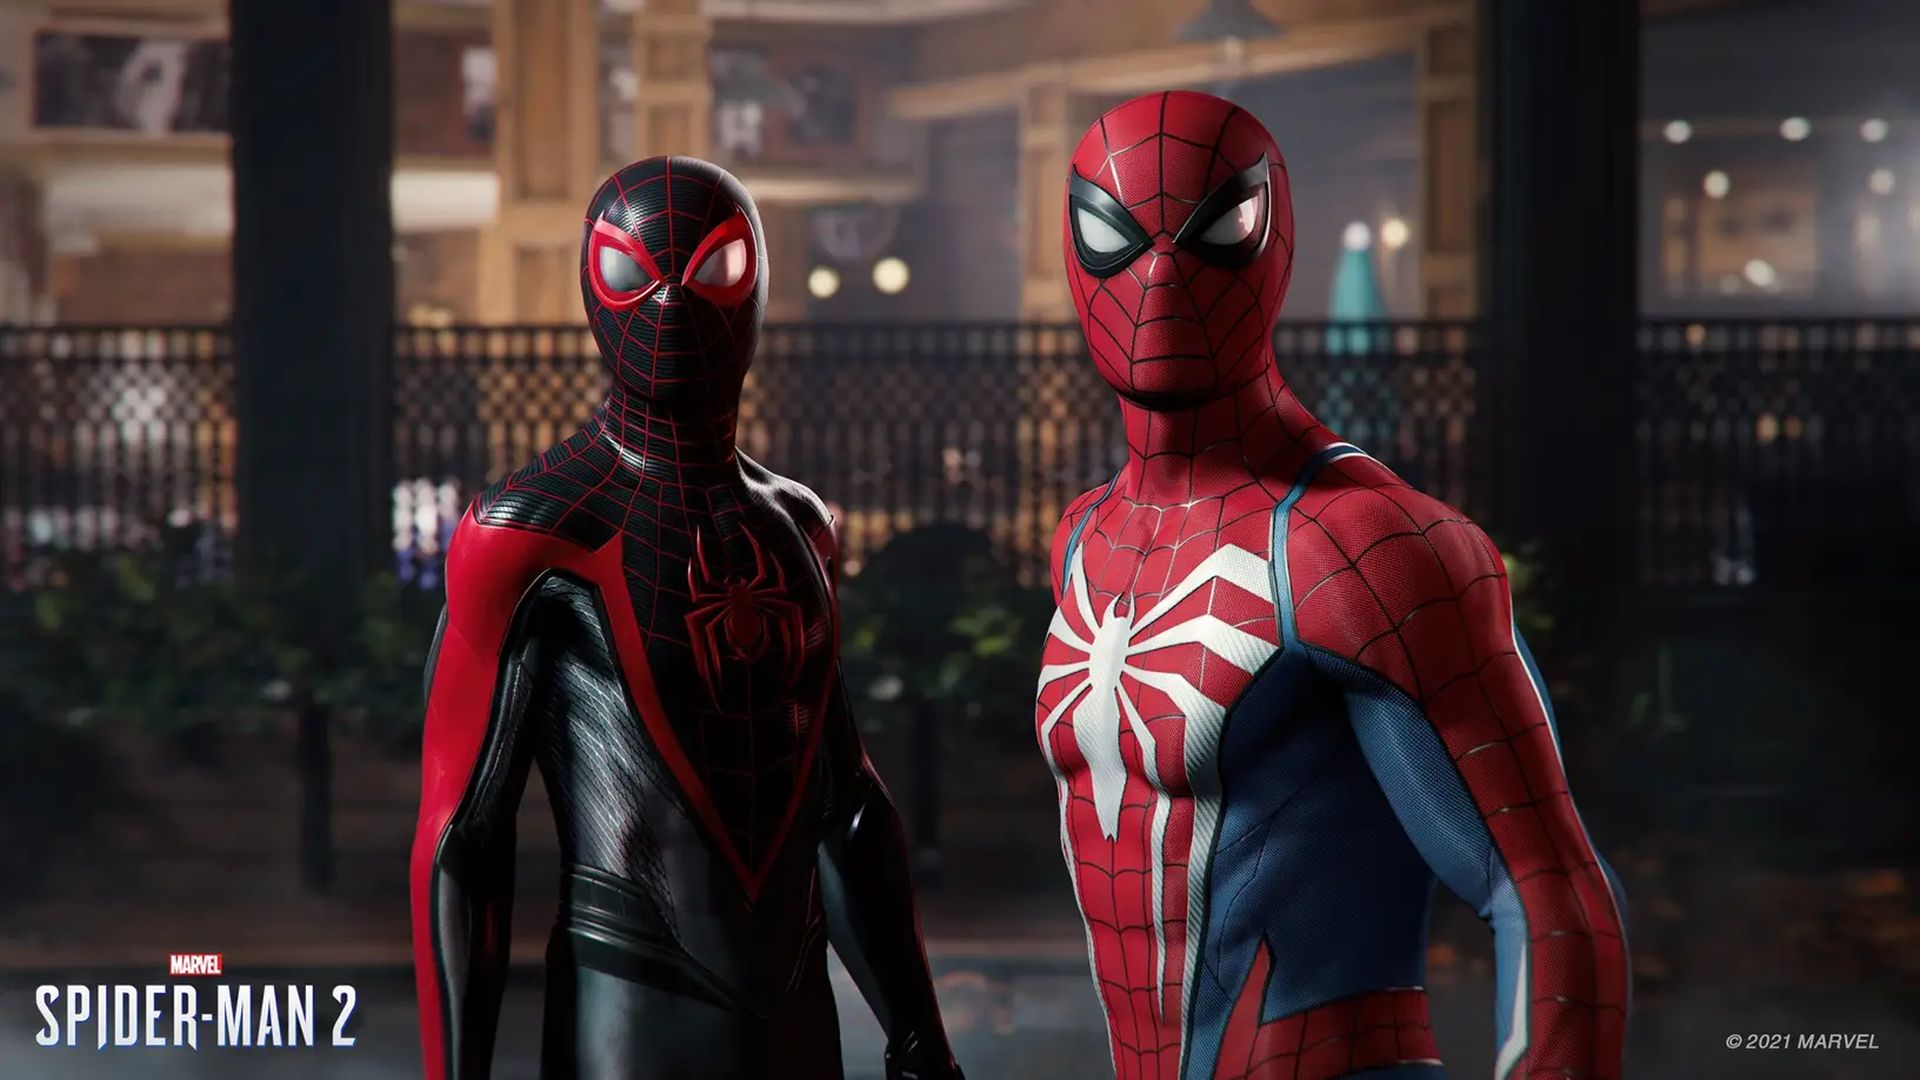 Marvel urang Spider-Man 2